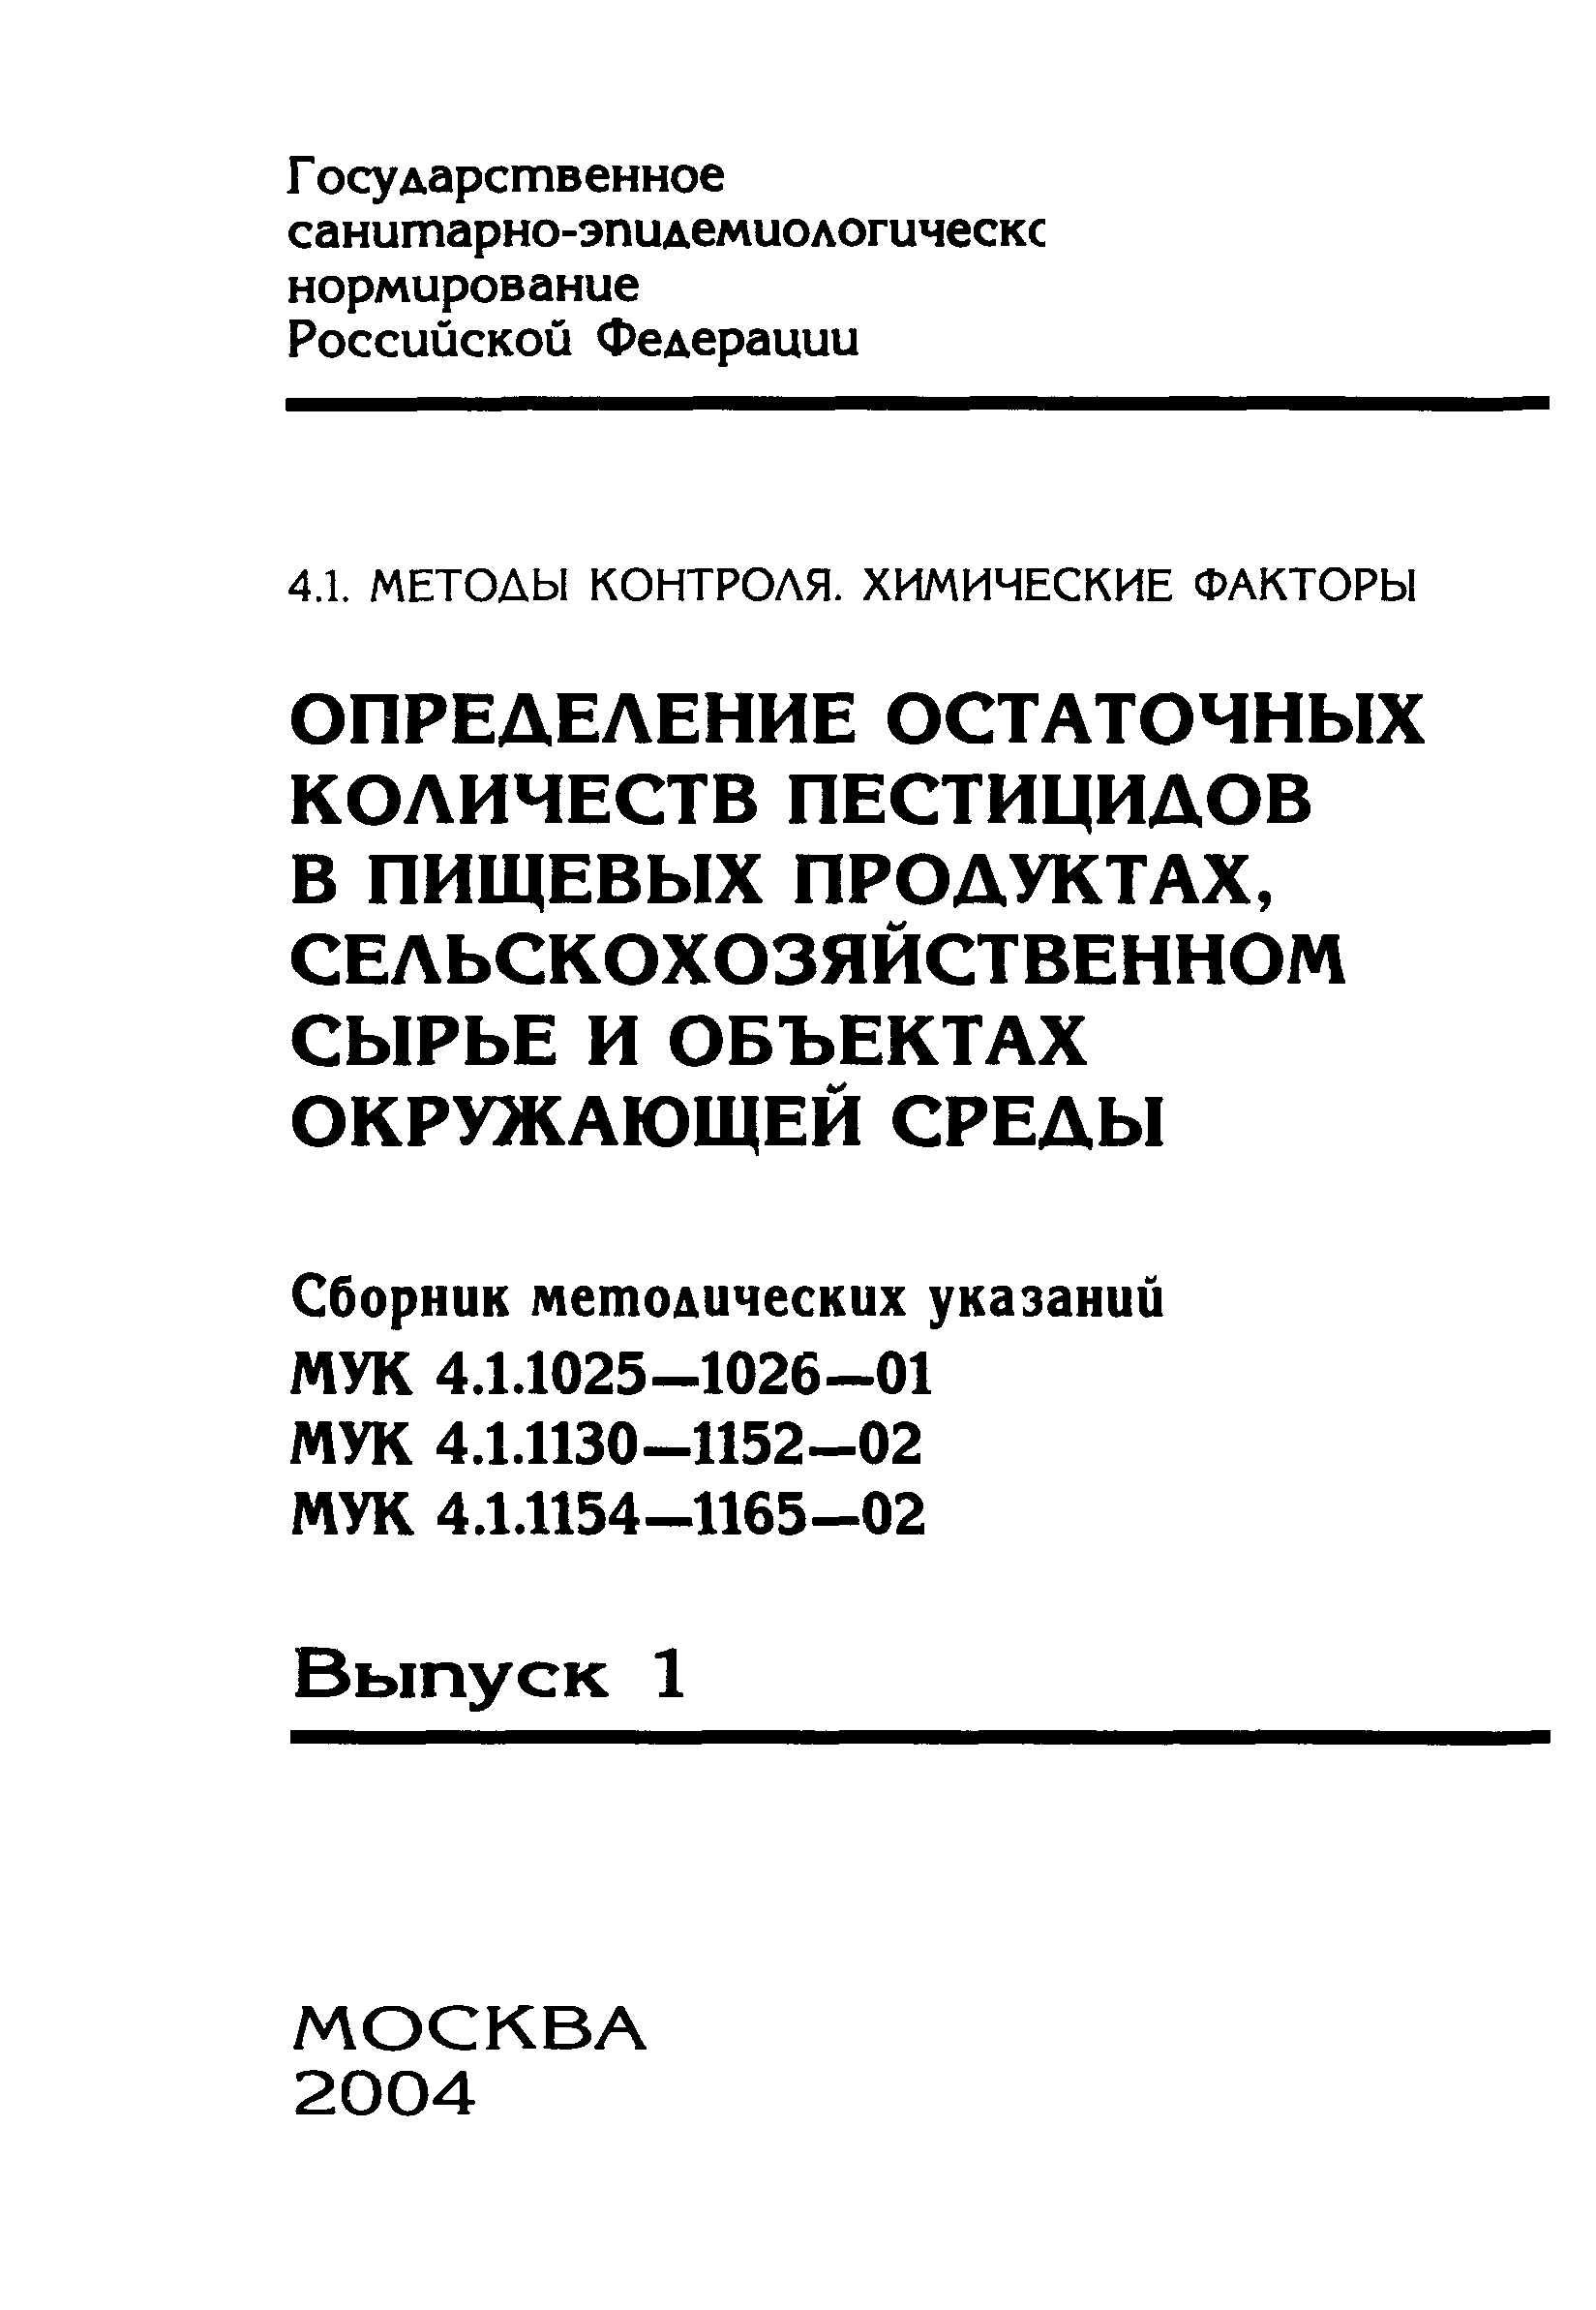 МУК 4.1.1155-02